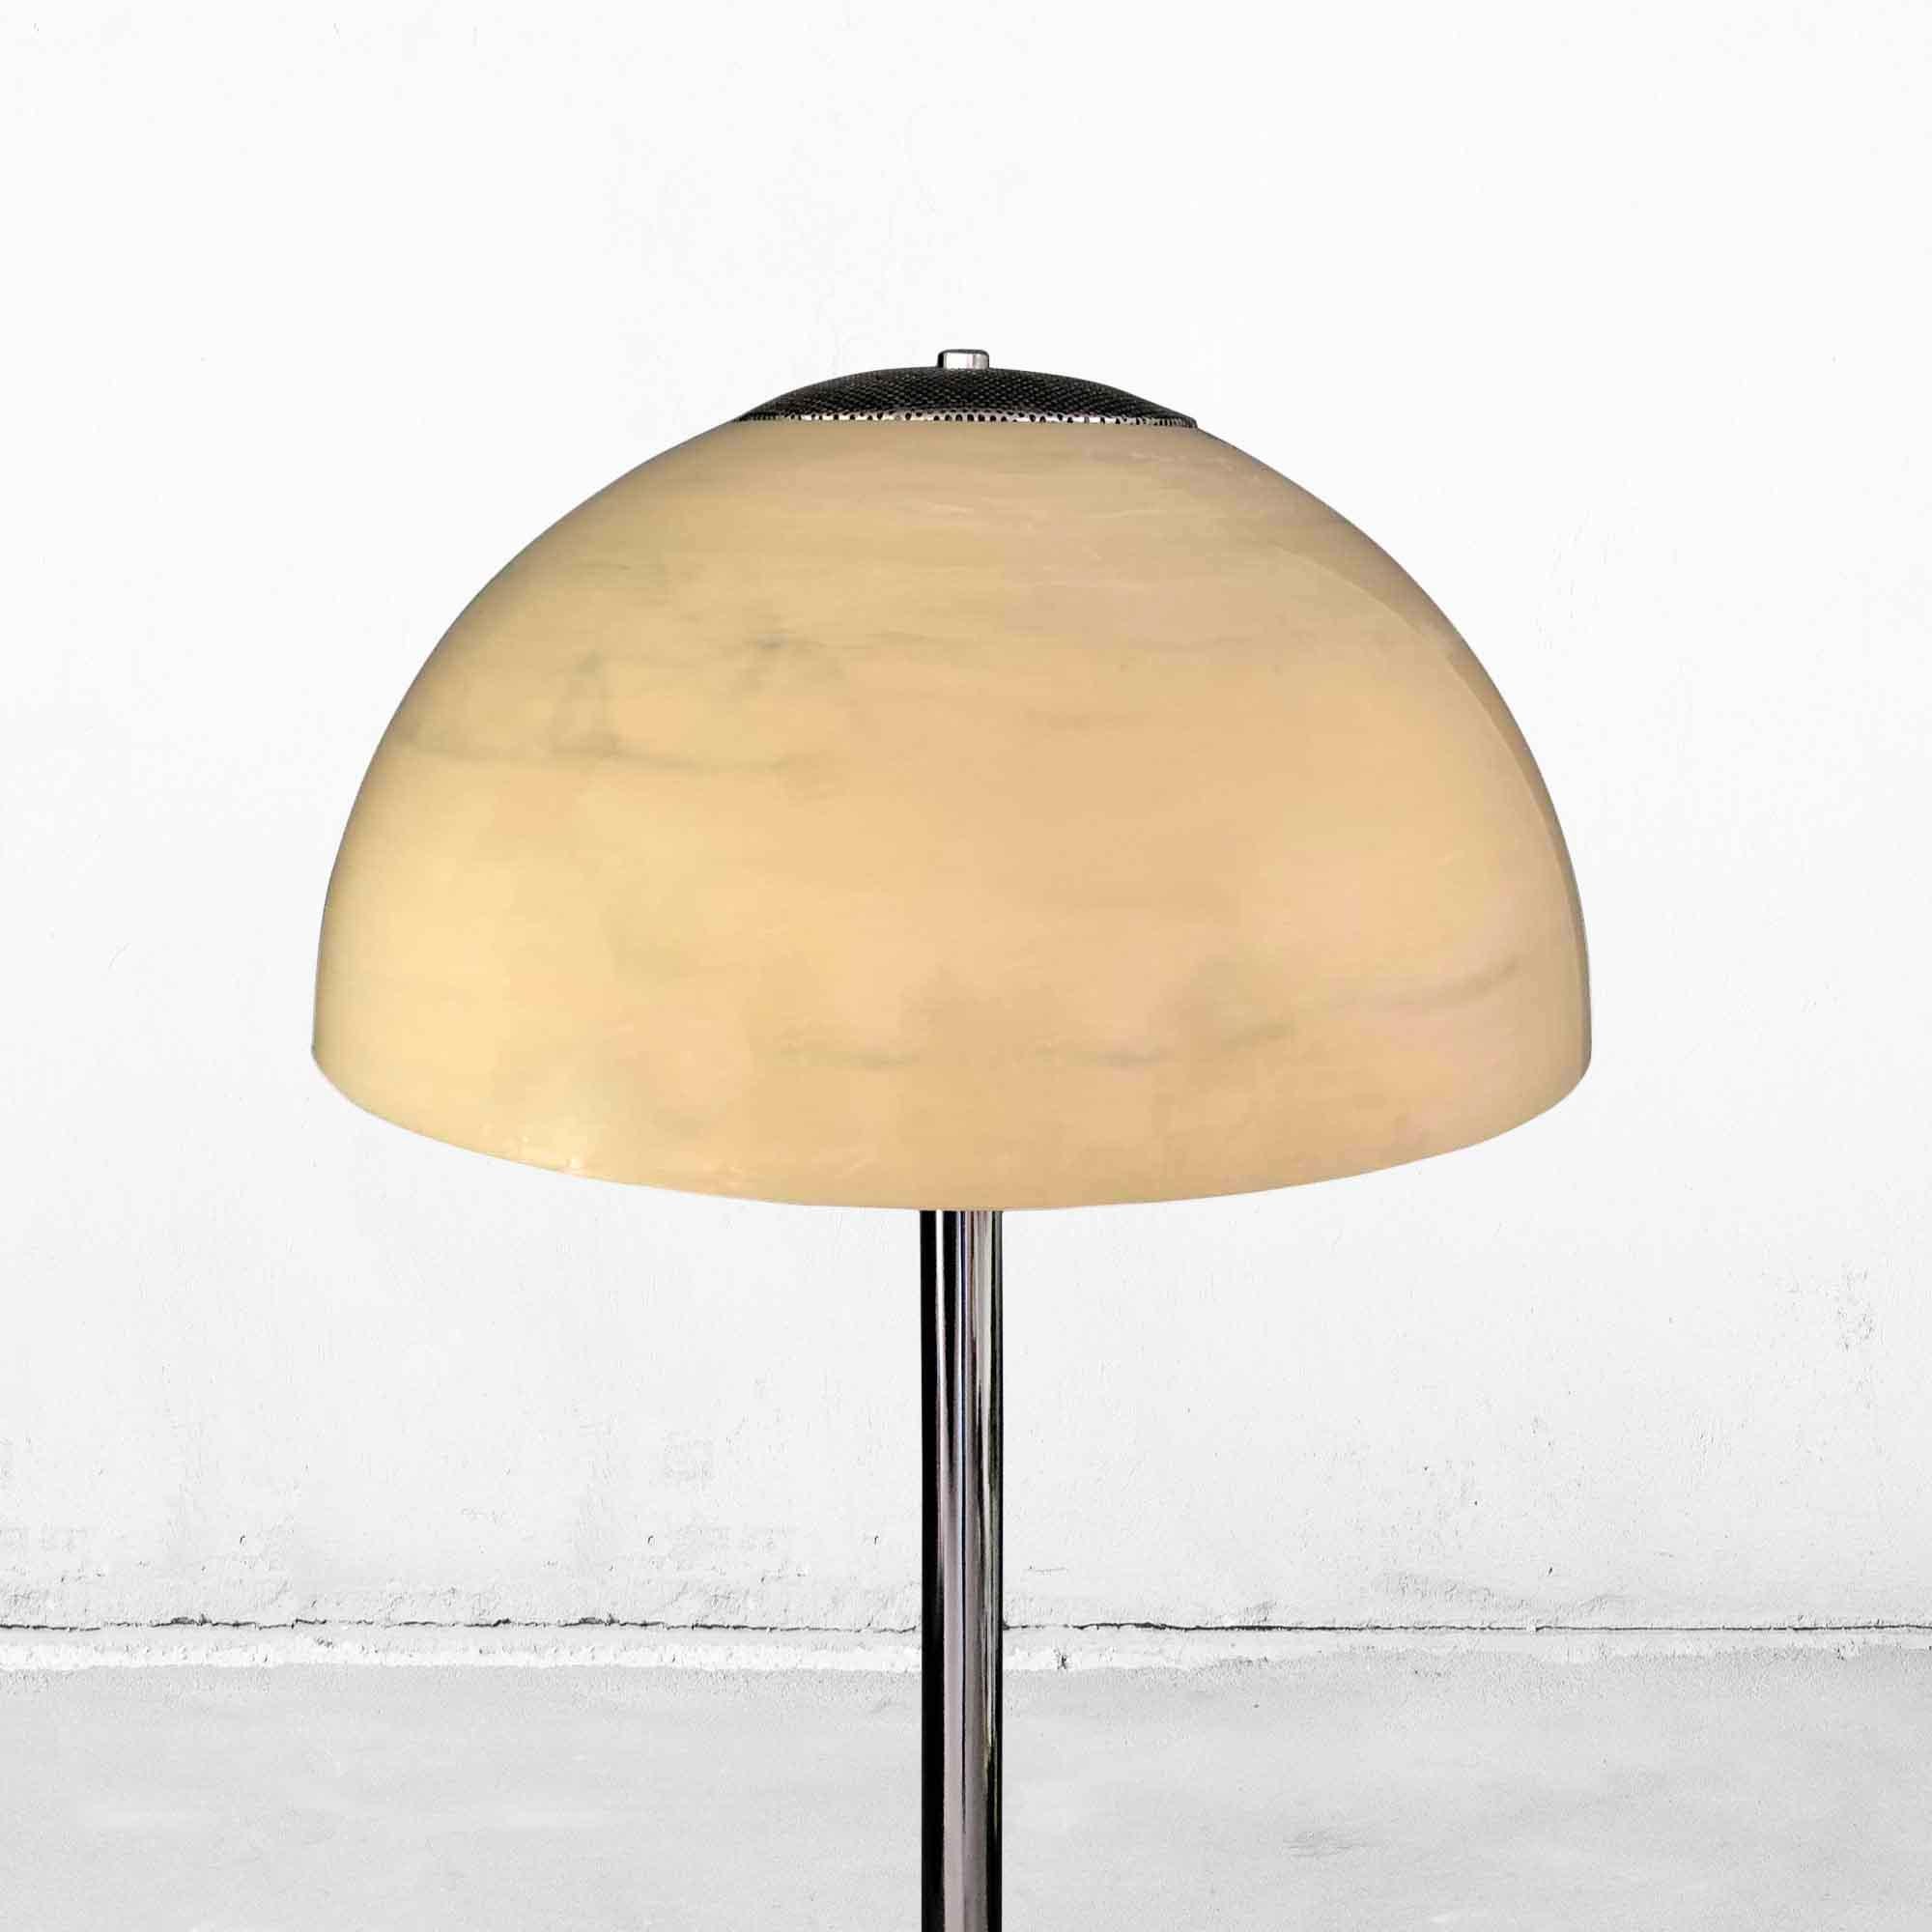 Post-Modern Space-Age Mushroom Floor Lamp with Marble Look